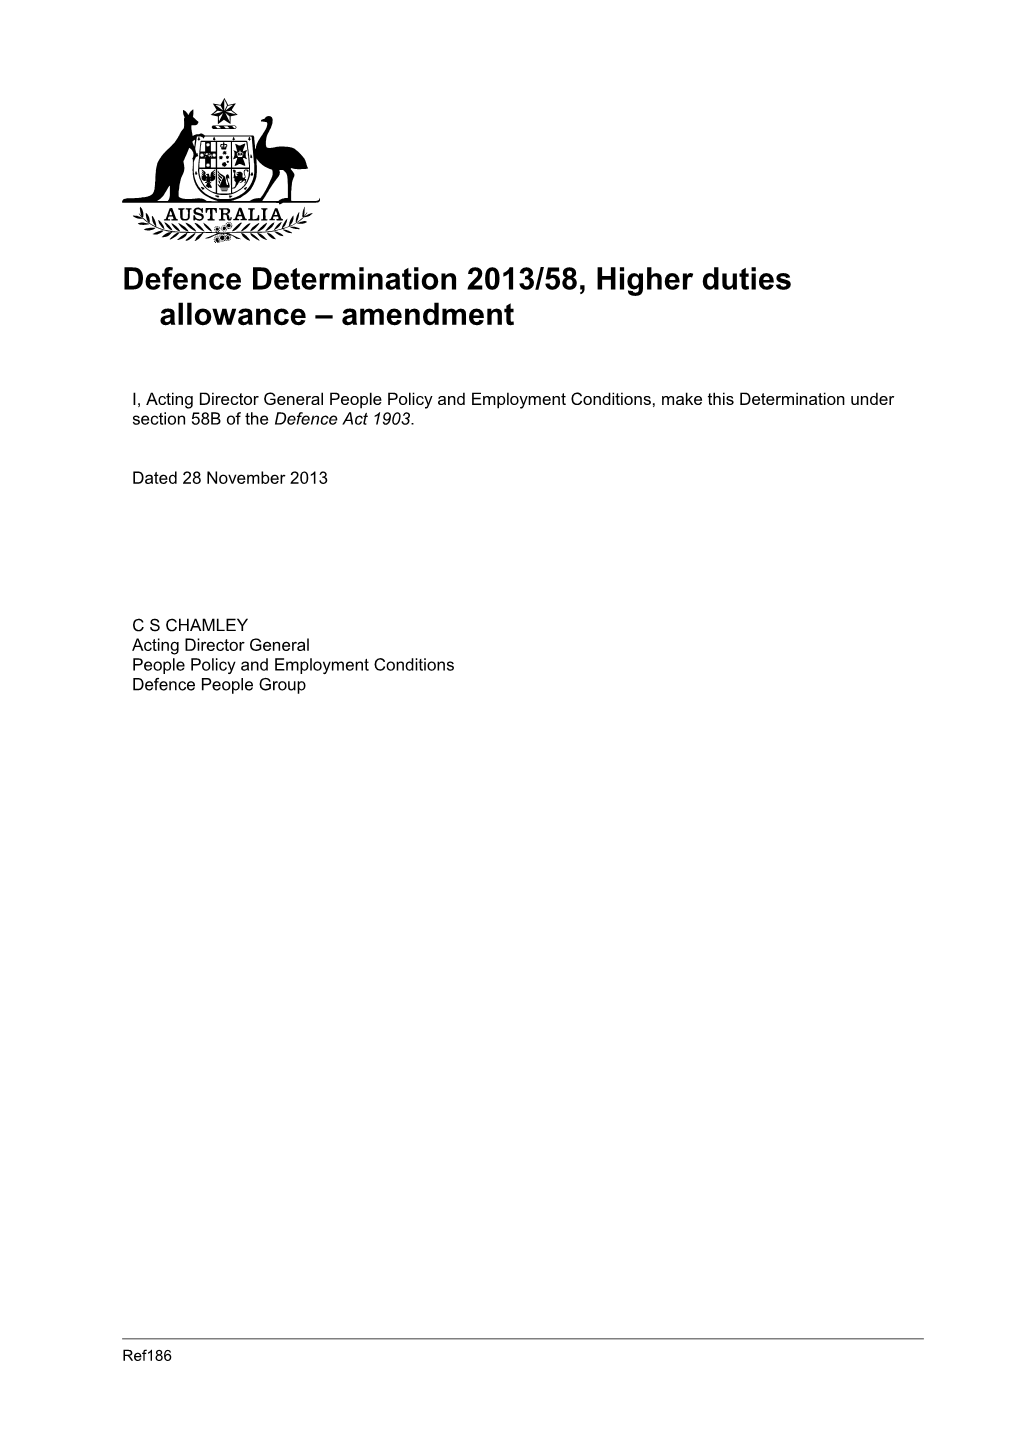 Defence Determination 2013/58, Higher Duties Allowance Amendment